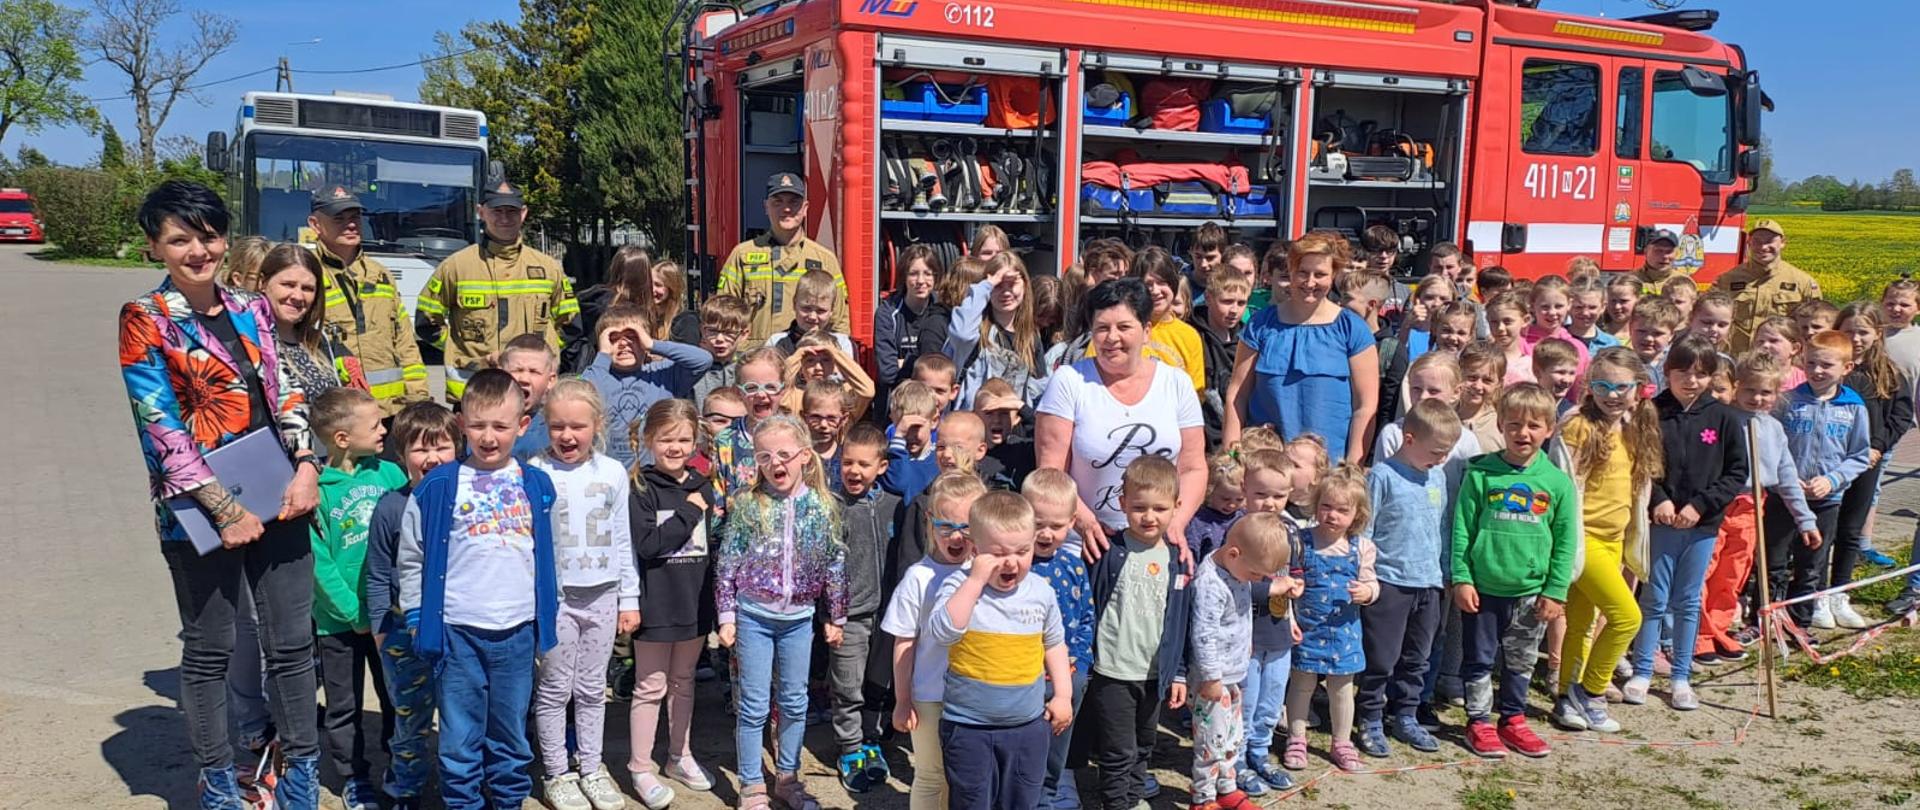 Na zdjęciu duża grupa dzieci i nauczycielek kolorowo ubrana. W tle samochód strażacki, obok strażacy.